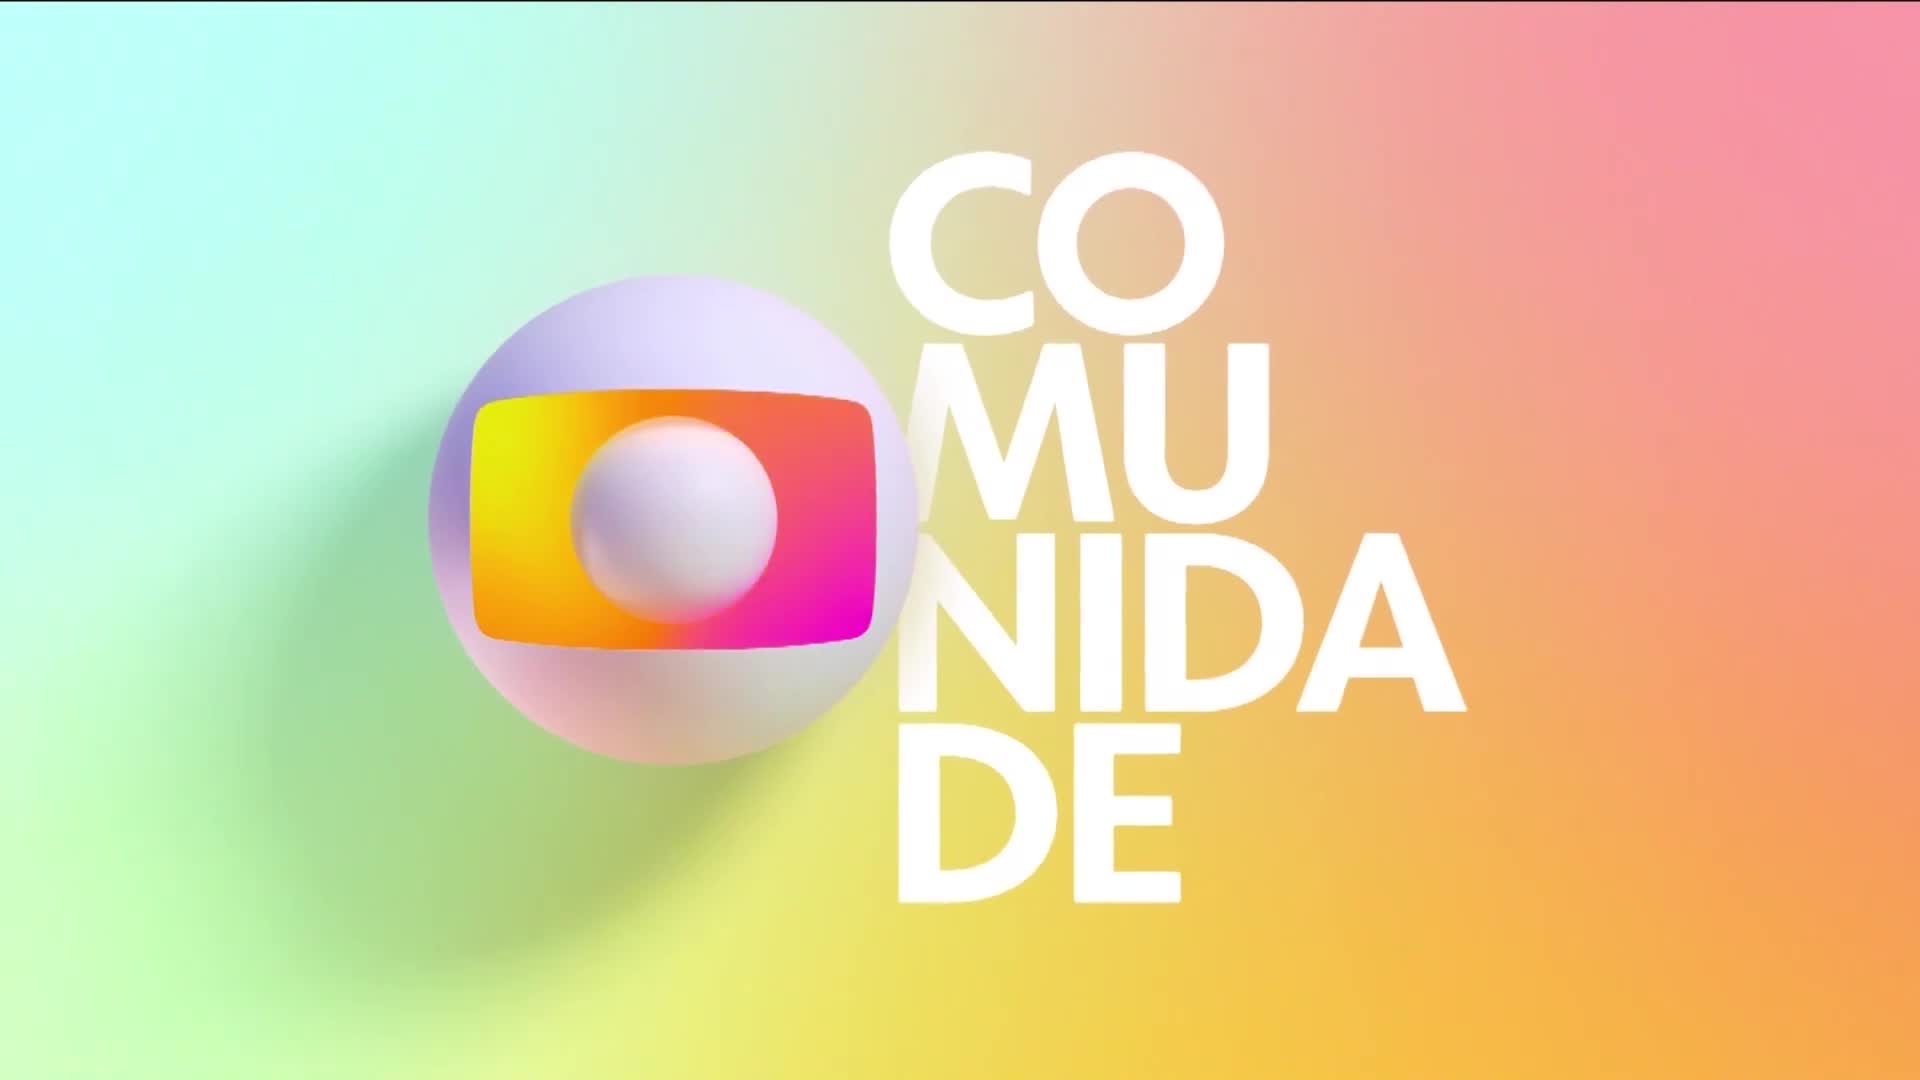 TV Globo - Wikipedia